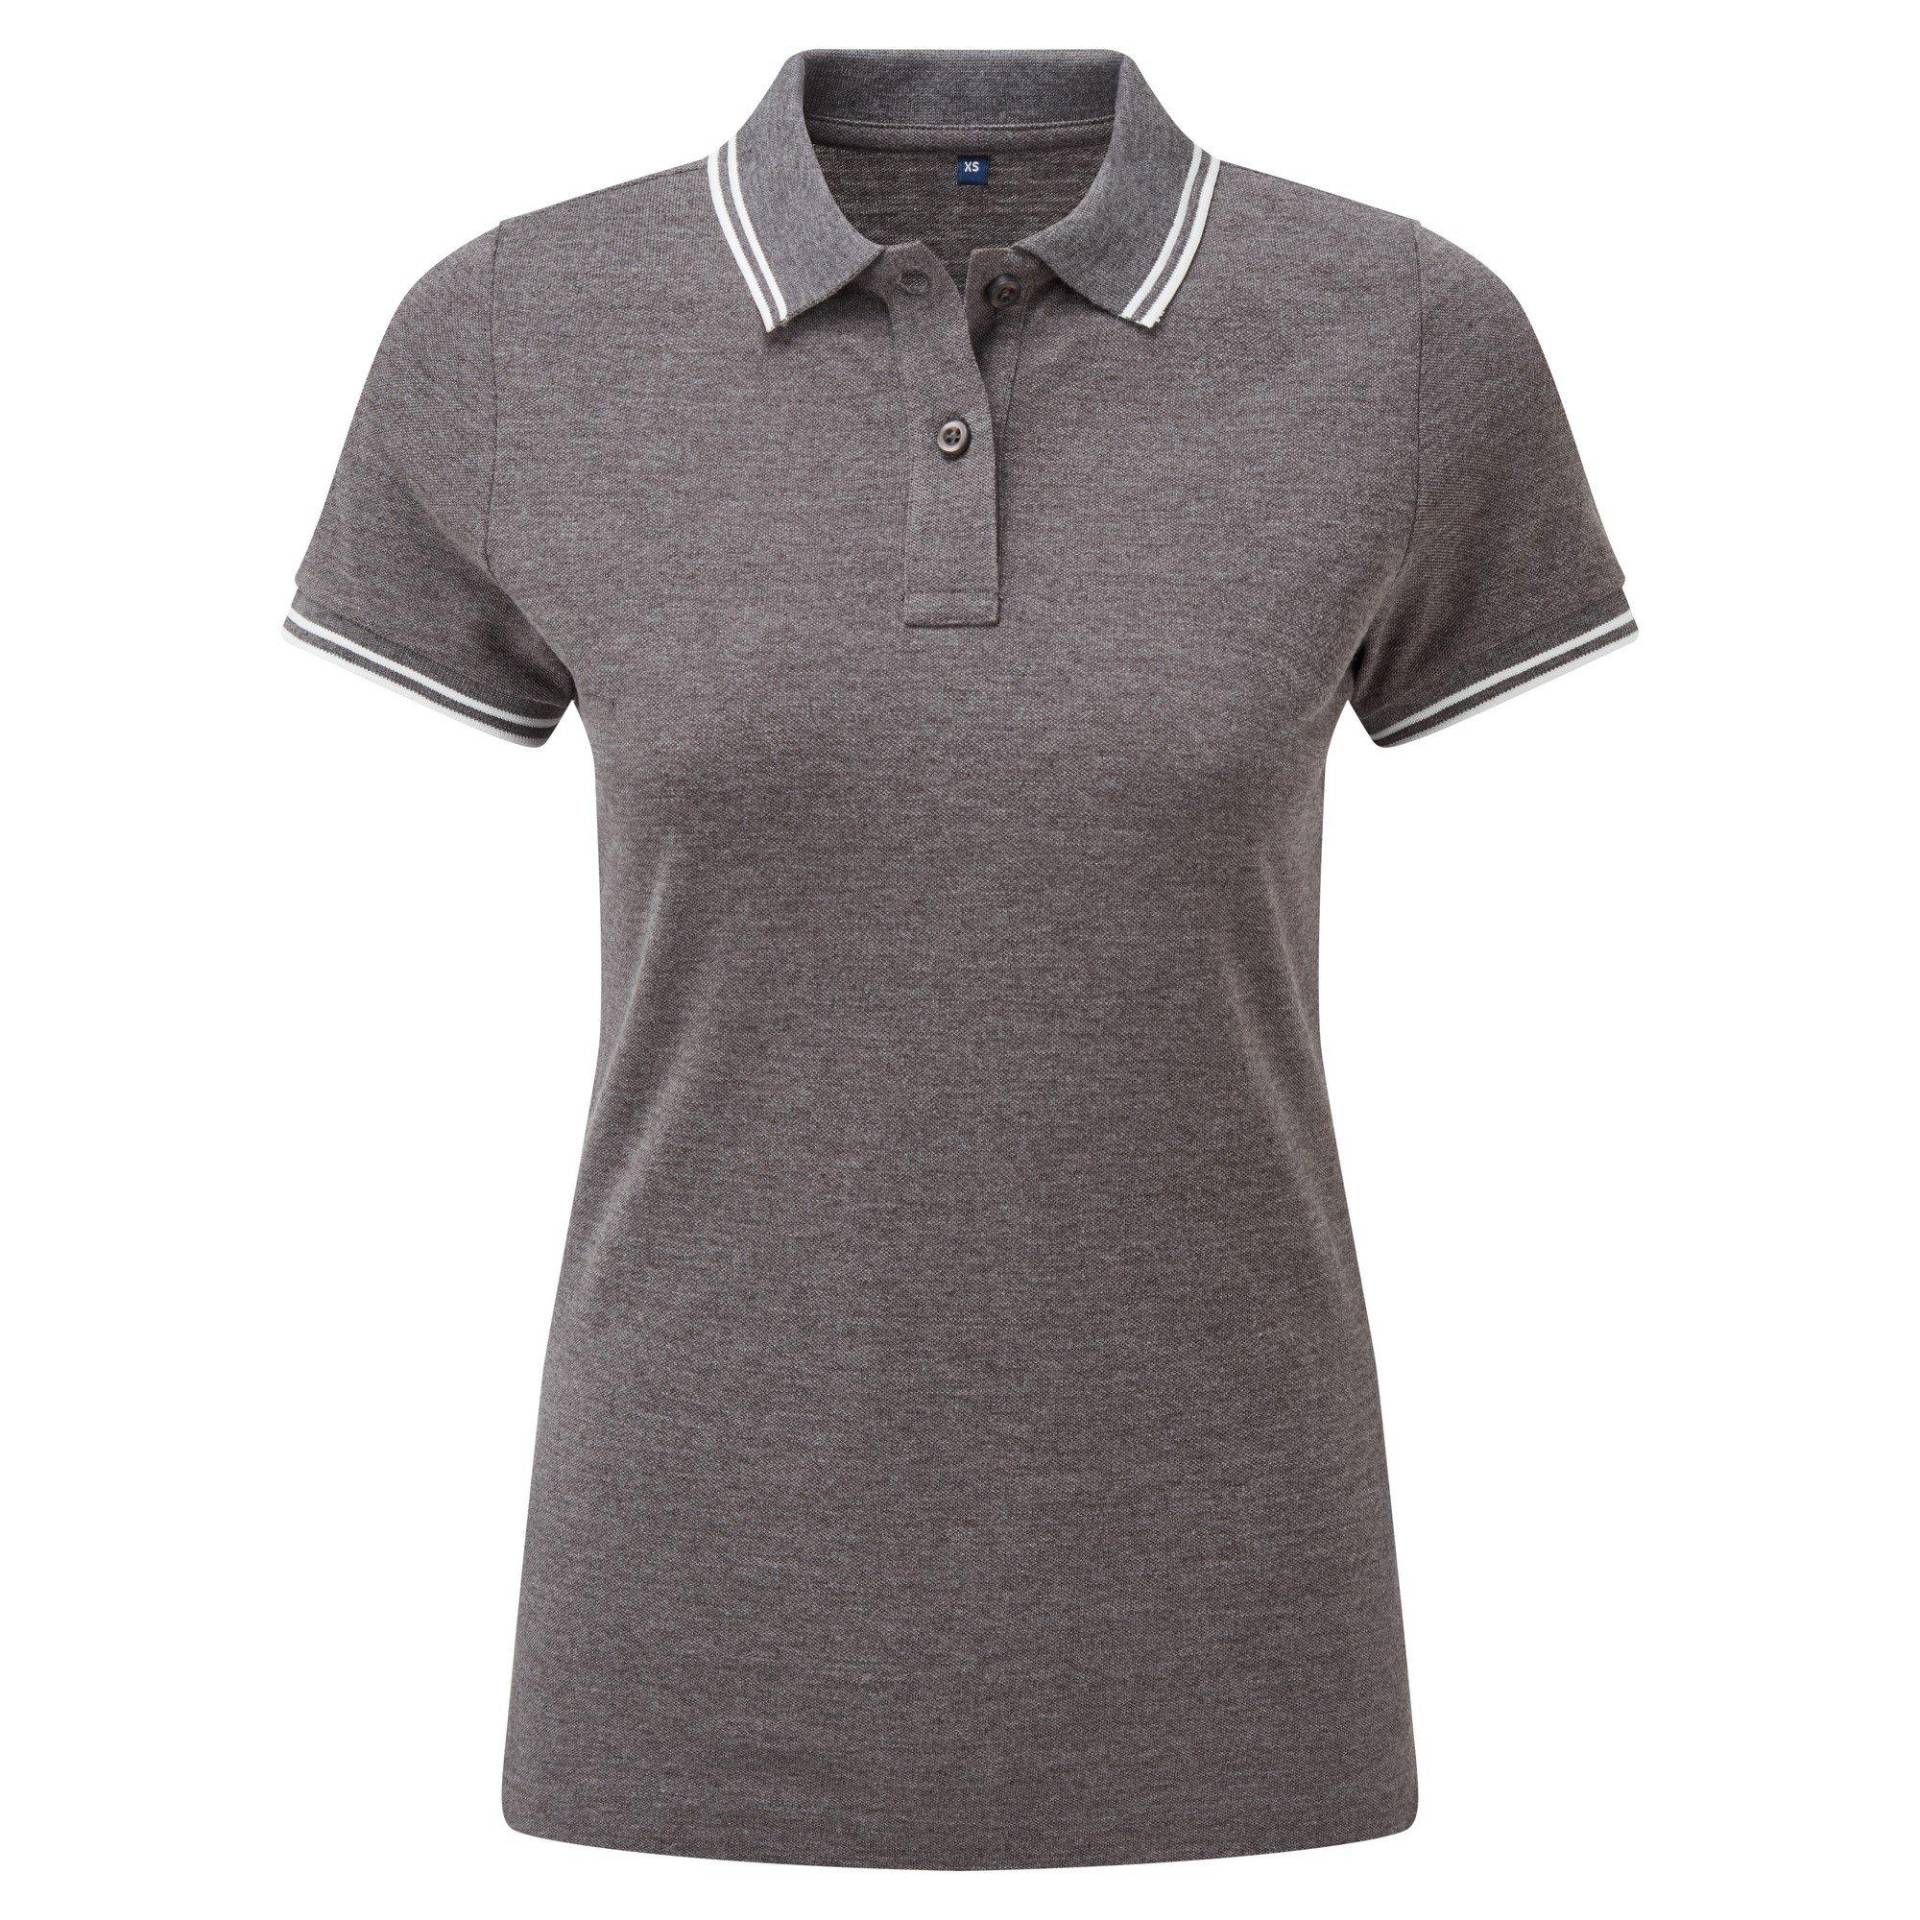 Poloshirt Mit Kontrastfarbenen Streifen Damen Charcoal Black M von Asquith & Fox